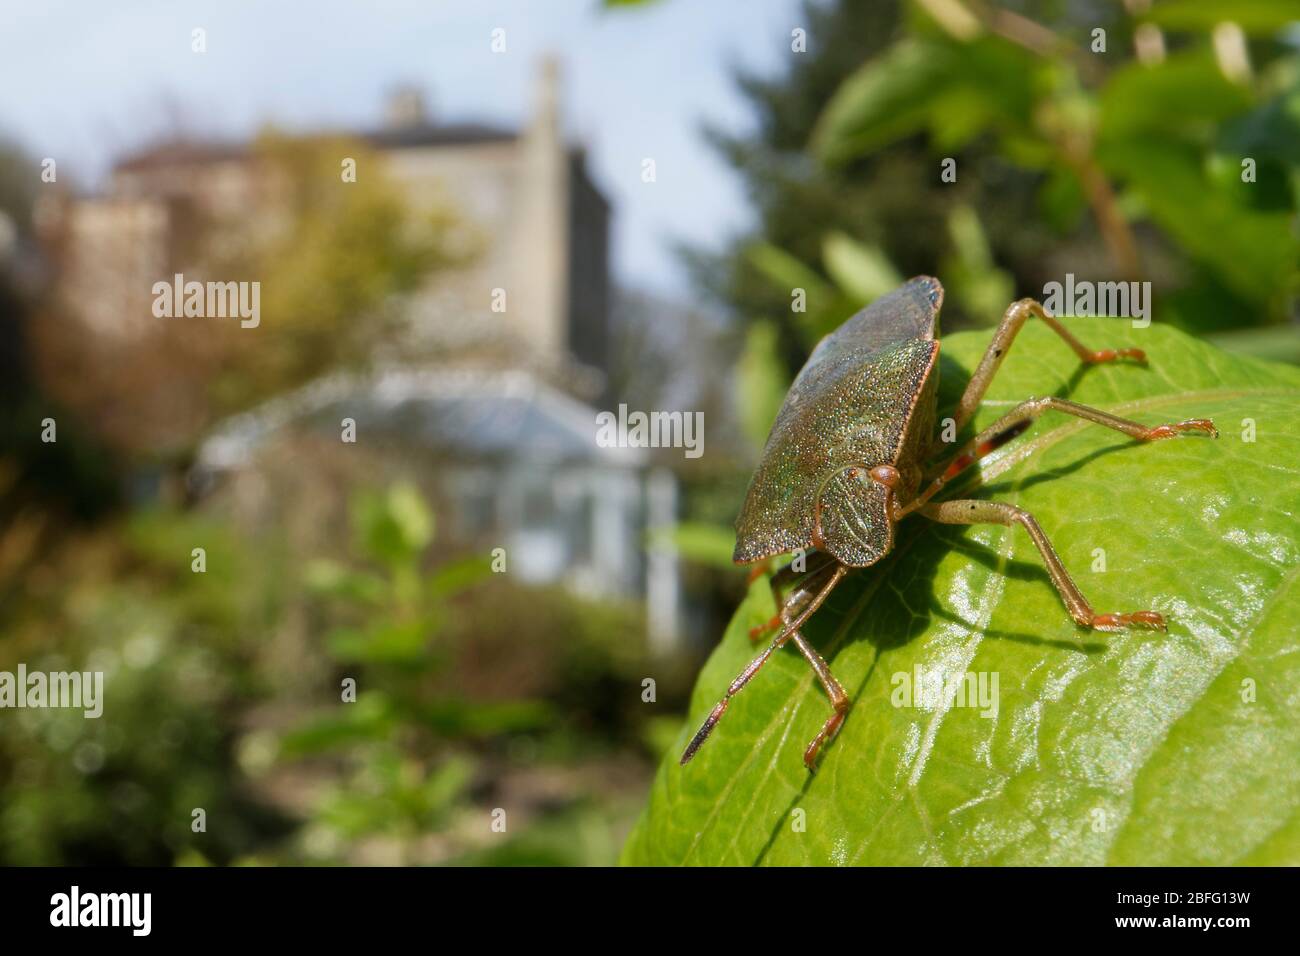 Bug de bouclier vert / bug de stik (Palomena prasina) se coucher sur une feuille de miel de succion dans un jardin, Wiltshire, Royaume-Uni, avril. Prise pendant le verrouillage de Coronavirus. Banque D'Images